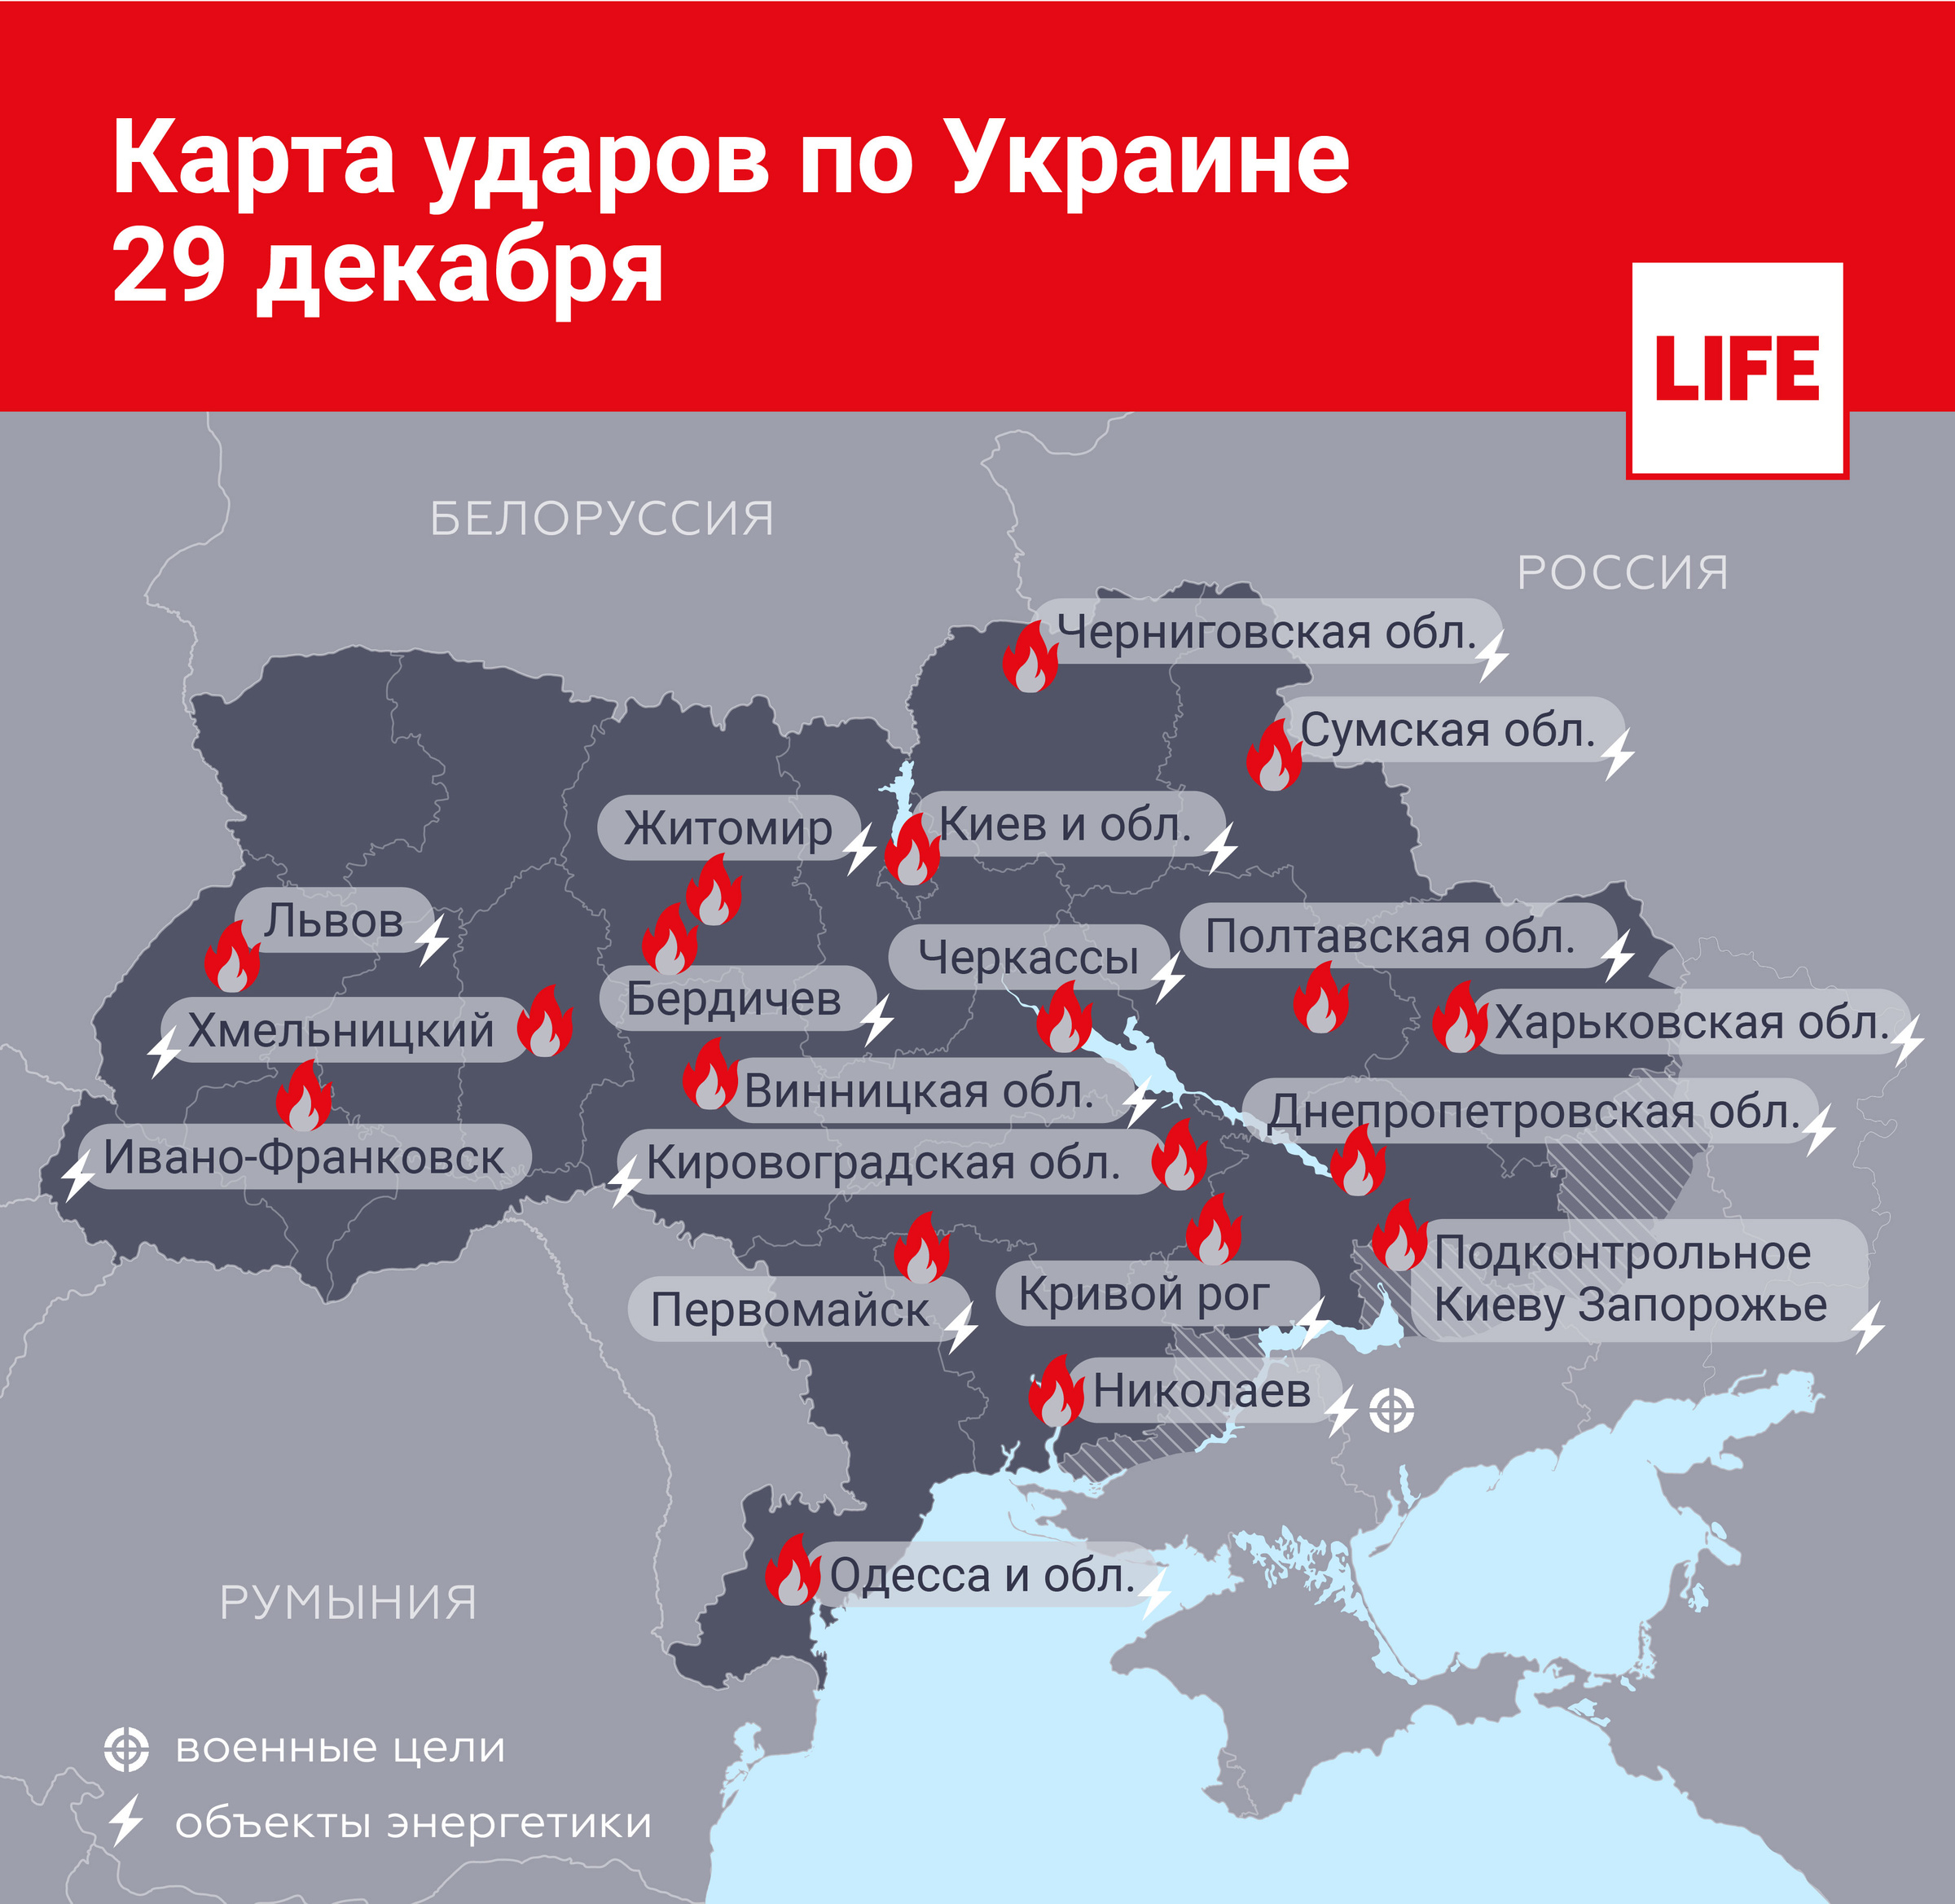 Карта ударов по Украине 29 декабря. Инфографика © LIFE